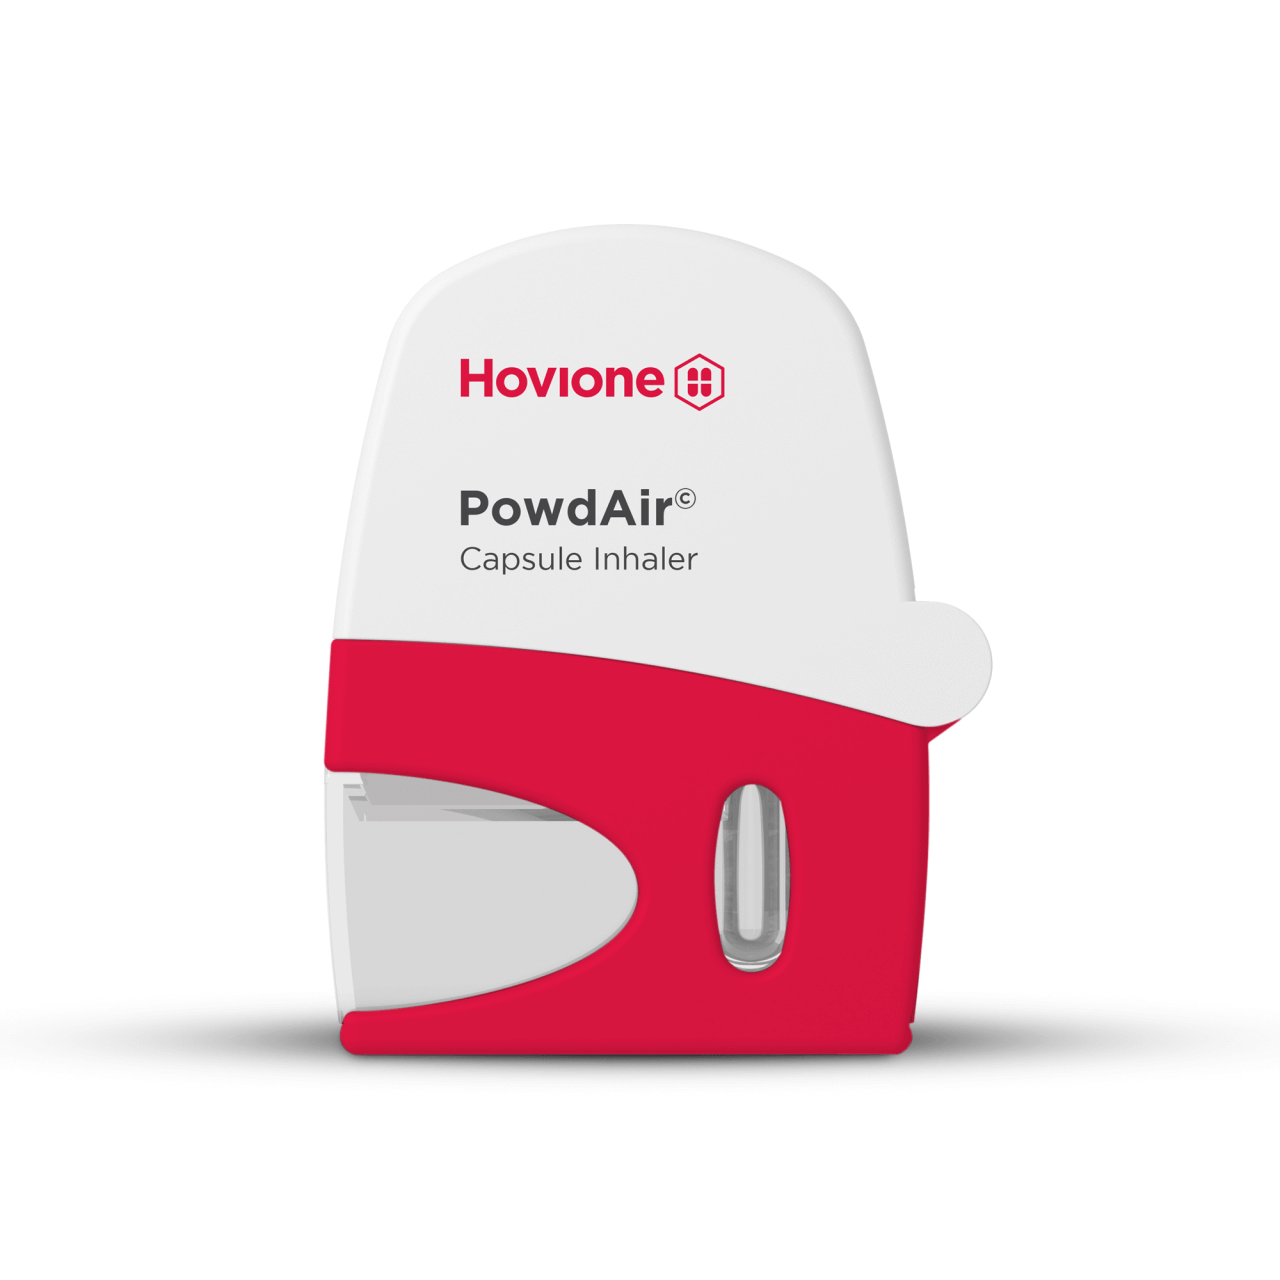 Powdair DPI device | Hovione